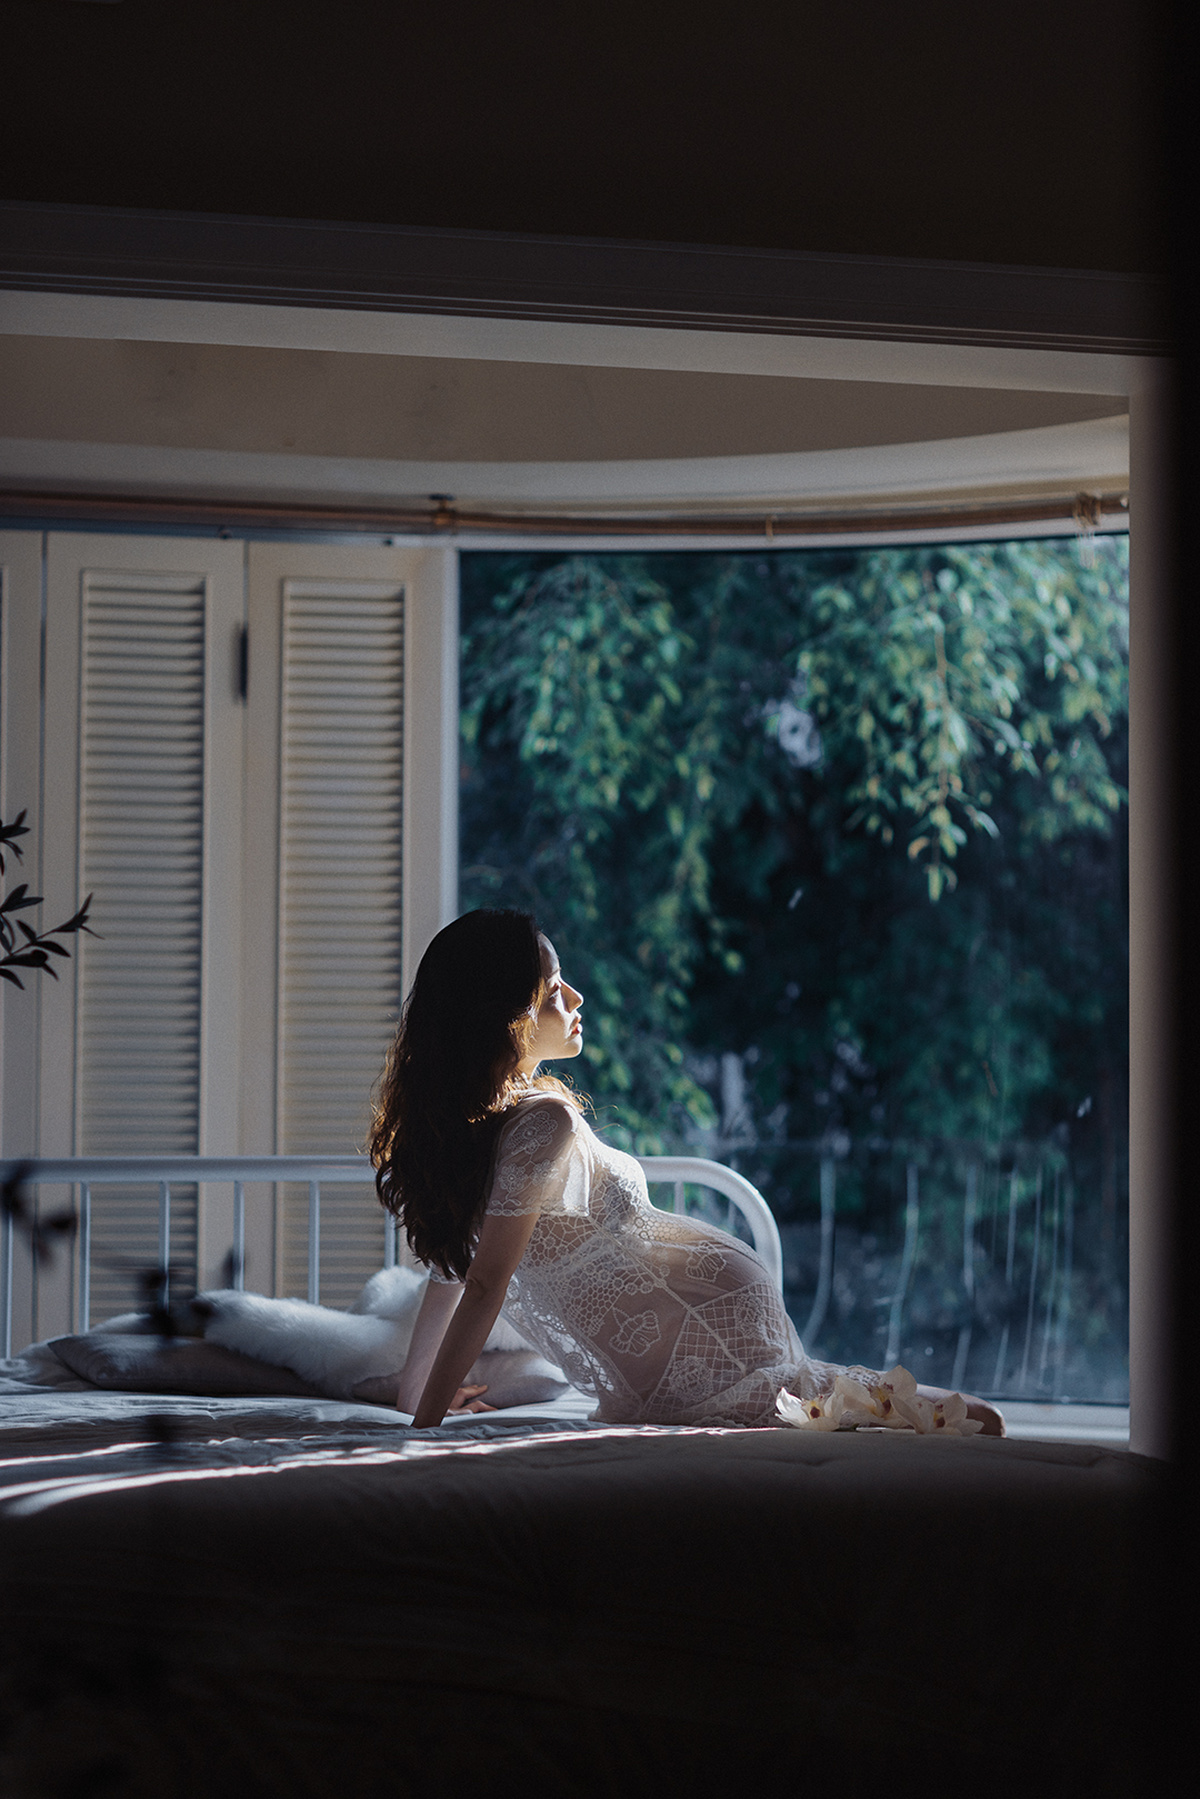 一个穿着白色连衣裙的年轻女子坐在床上 一只猫在房间的窗户附近。